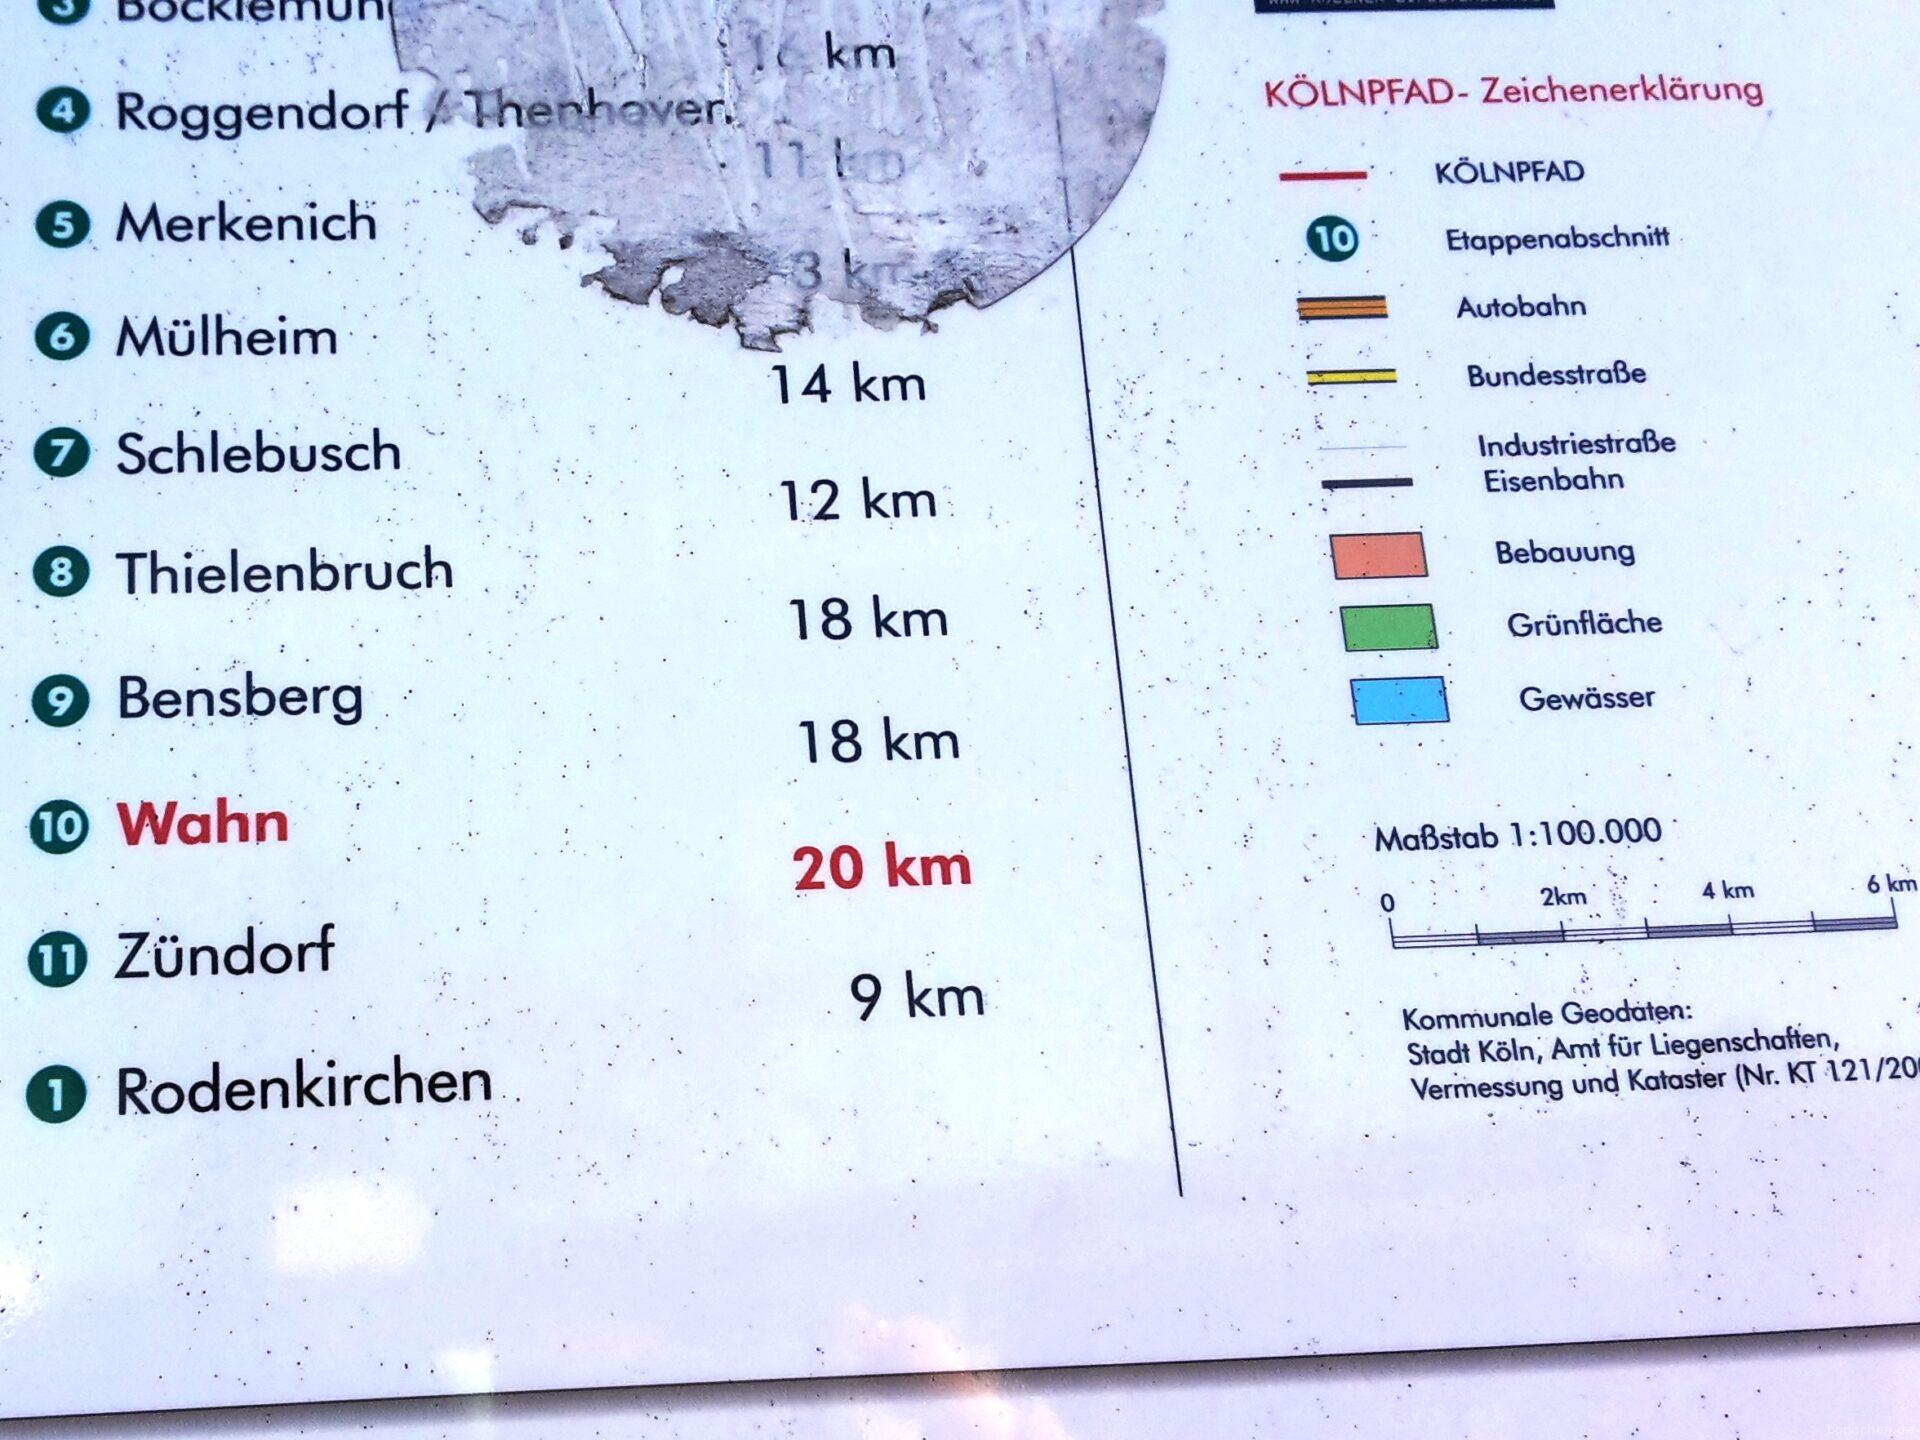 Kölnpfad Etappe 10 von Wahn nach Zündorf in 20 km